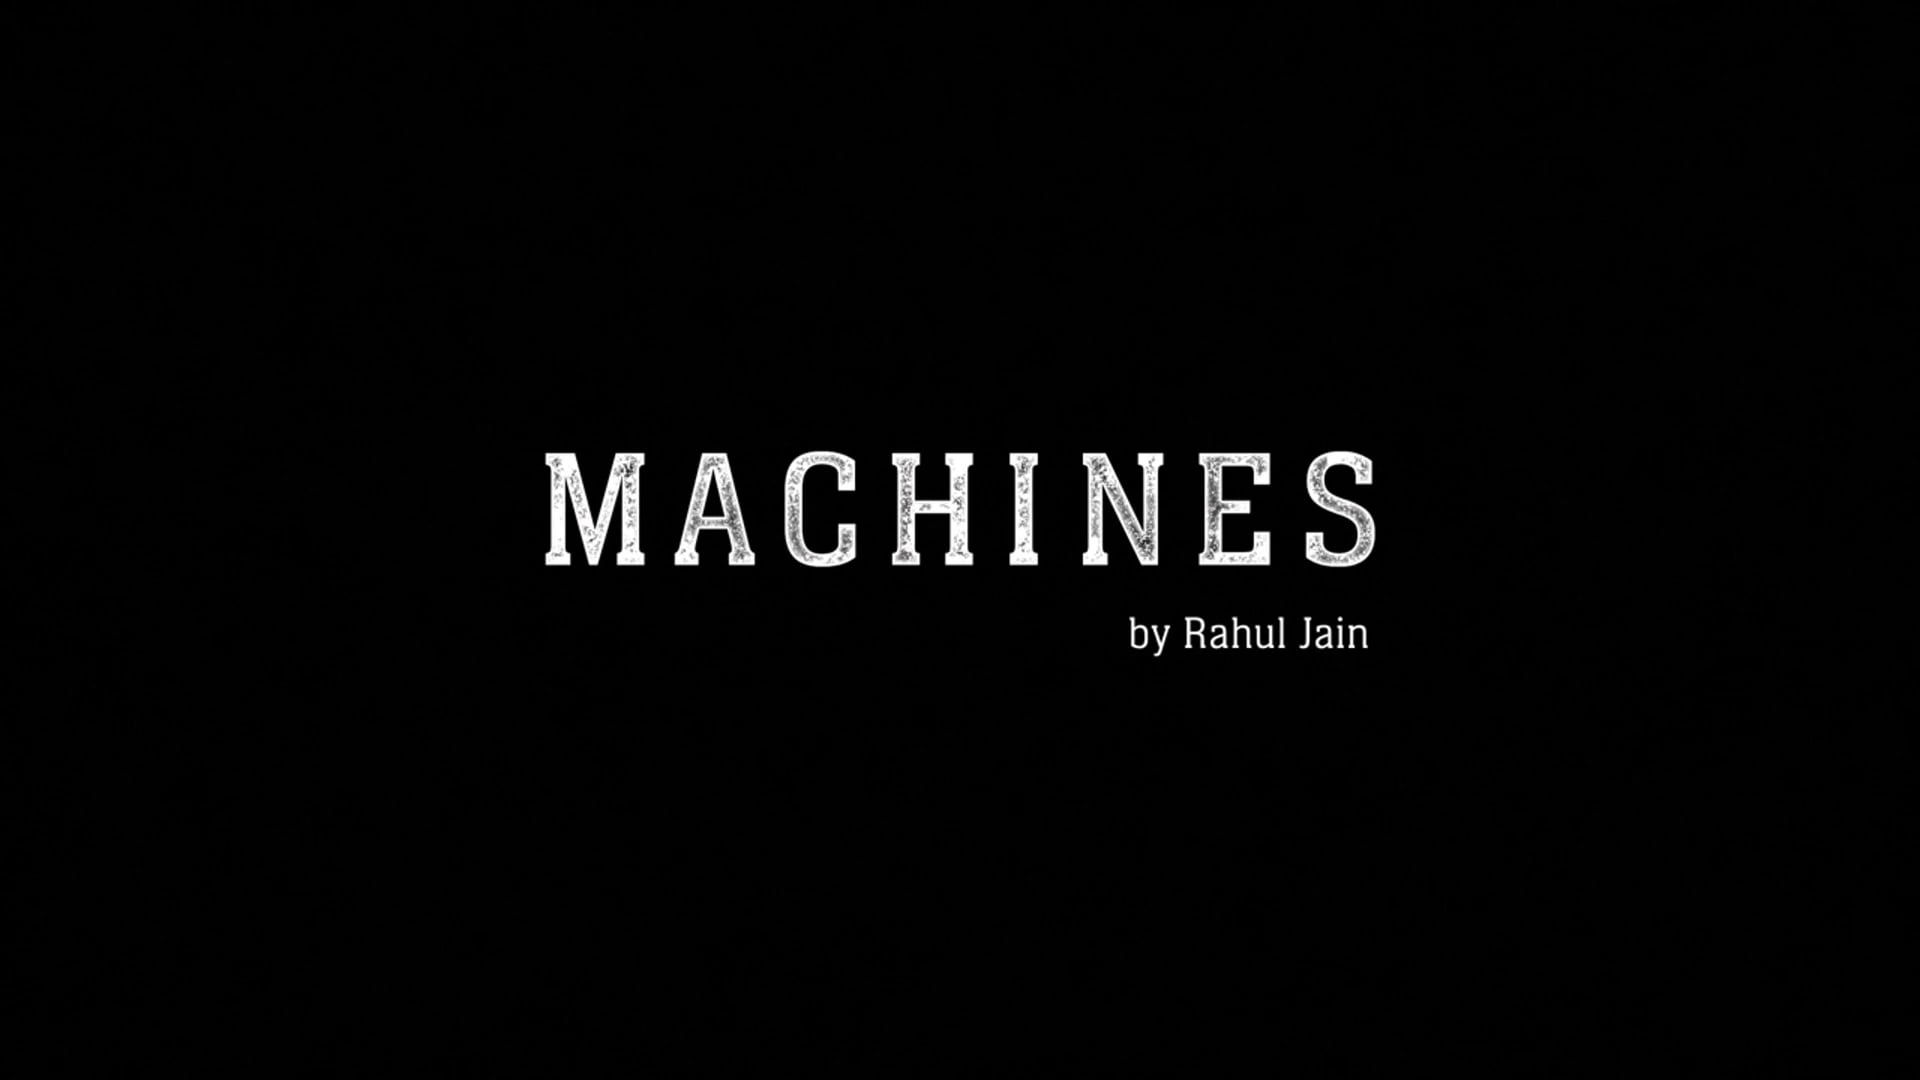 Watch MACHINES Online Vimeo On Demand on Vimeo